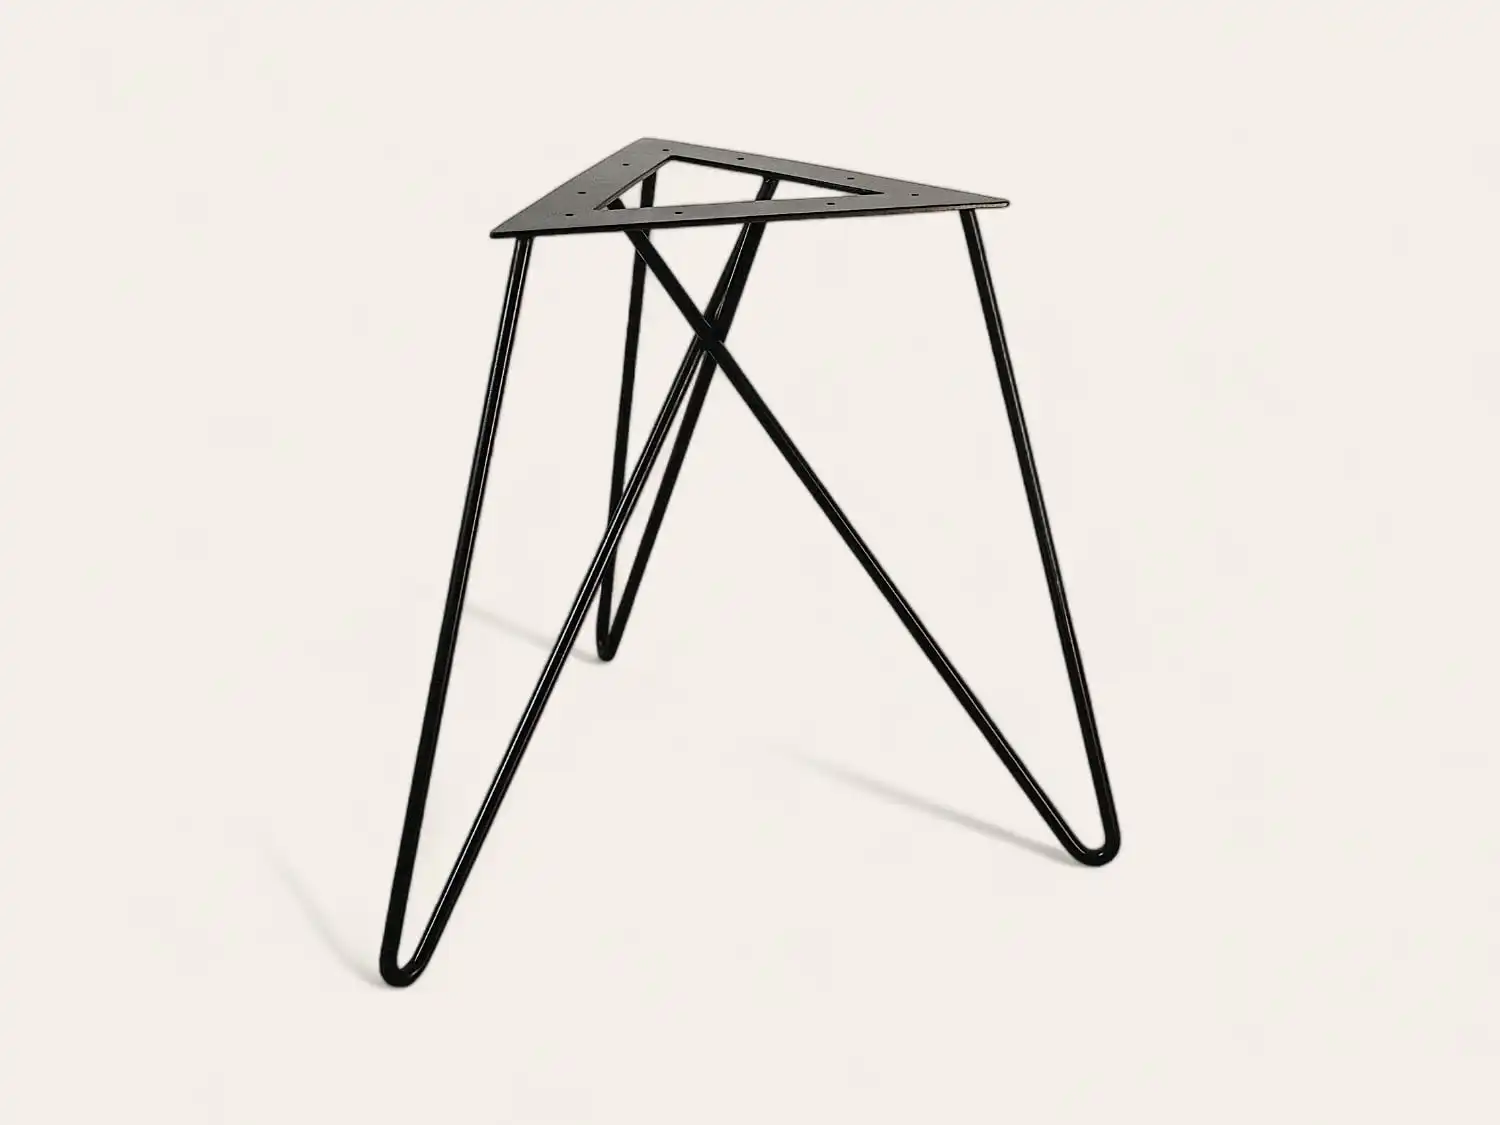 Un cadre de table minimaliste en métal noir avec un plateau triangulaire inversé et de fins pieds entrecroisés sur un fond blanc.